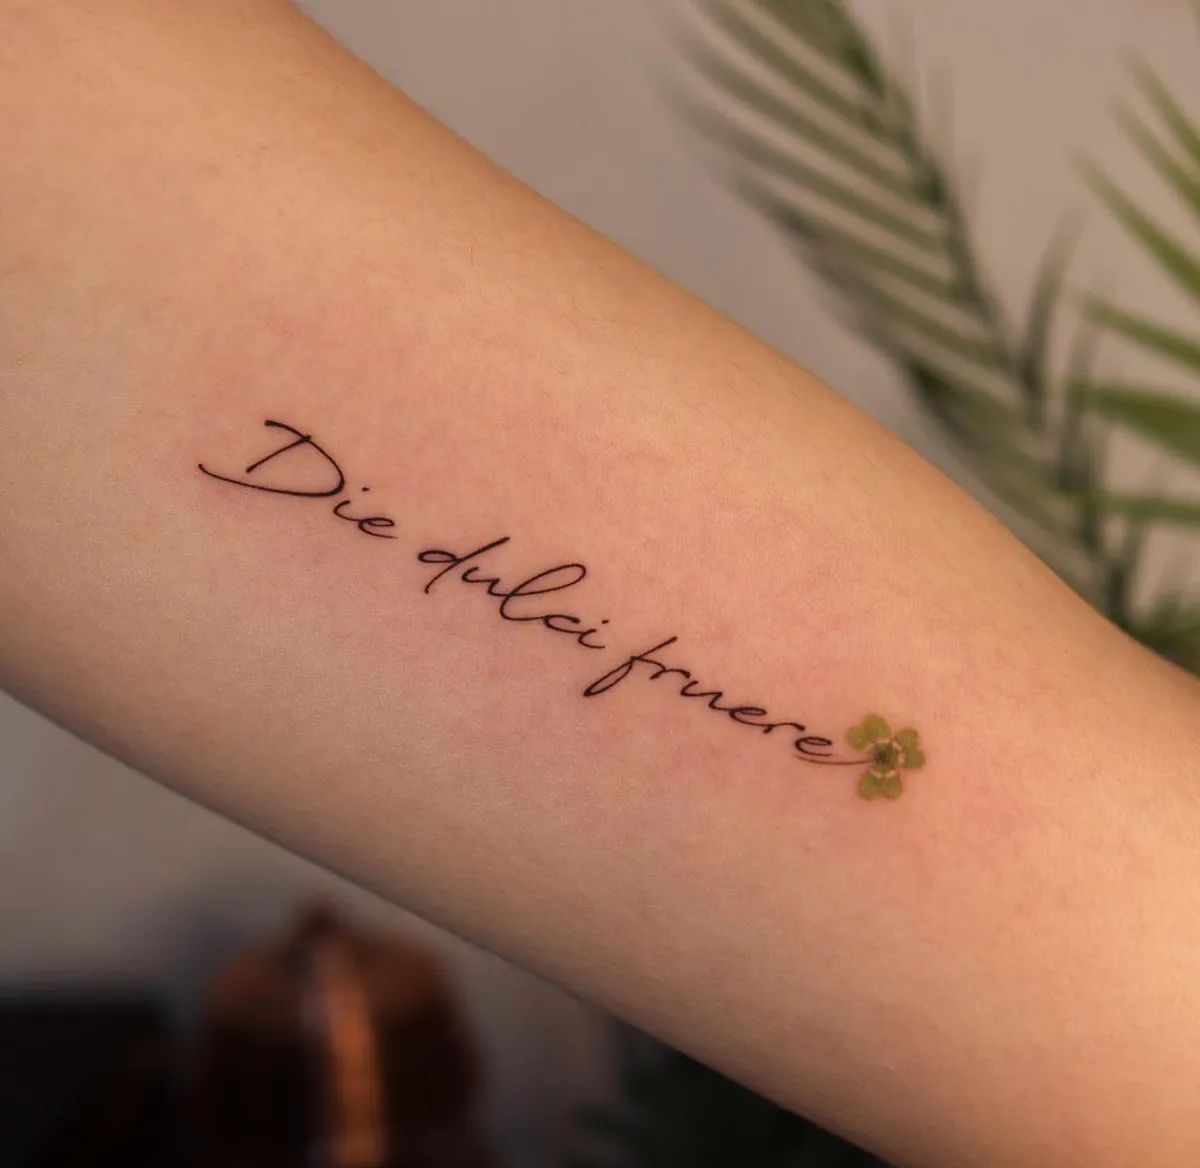 die dulci fruere schriftzug tattoo am arm mit kleeblatt